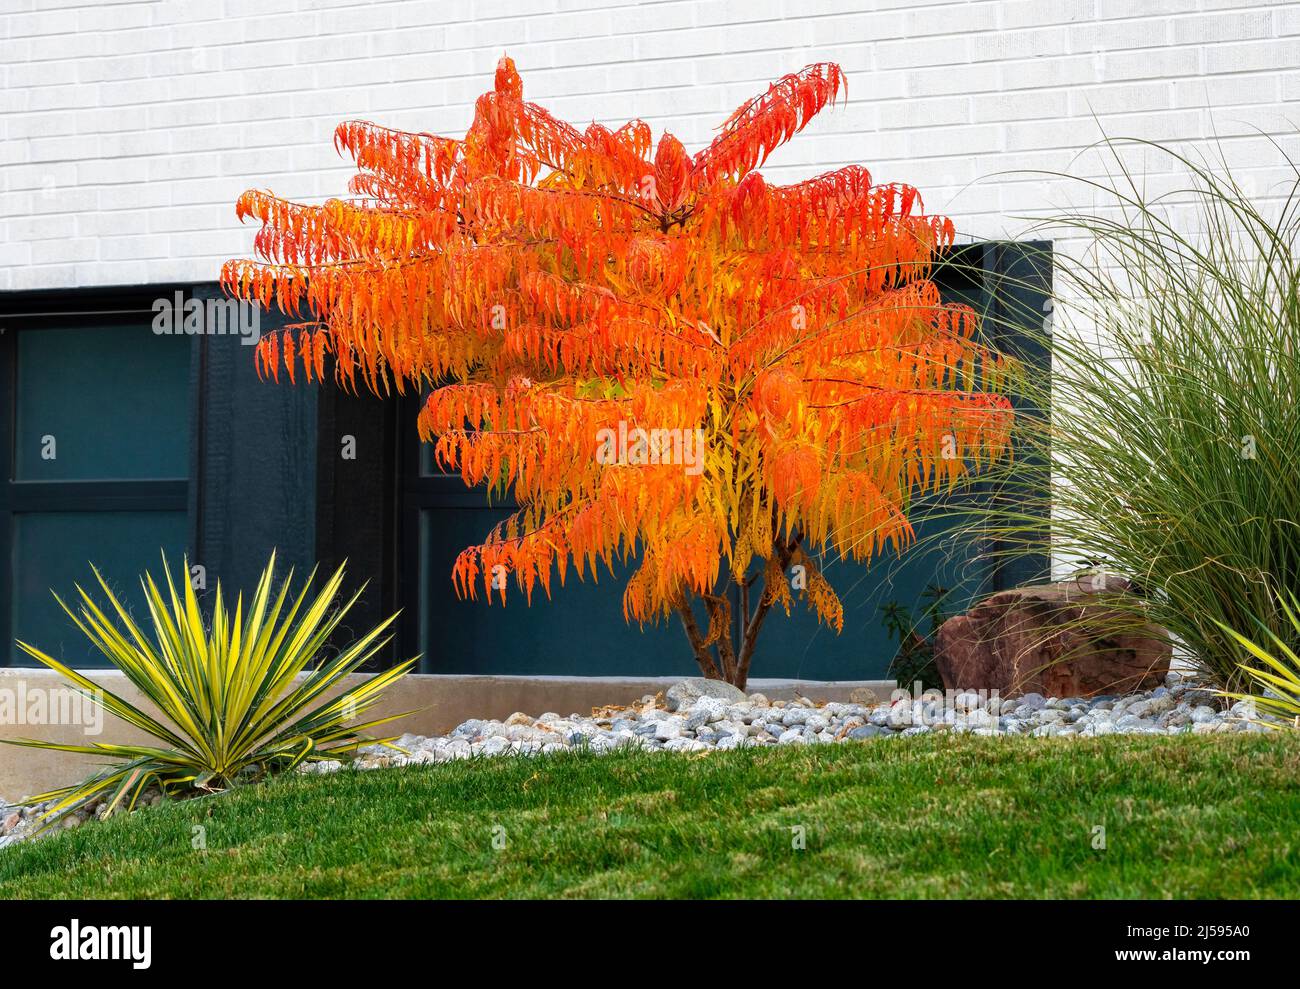 Un árbol de Sumac, Rhus typhina Tiger Eyes, vibrantemente naranja en la temporada de otoño, es una hermosa adición en un jardín bien ajardinado resistente a la sequía. Foto de stock